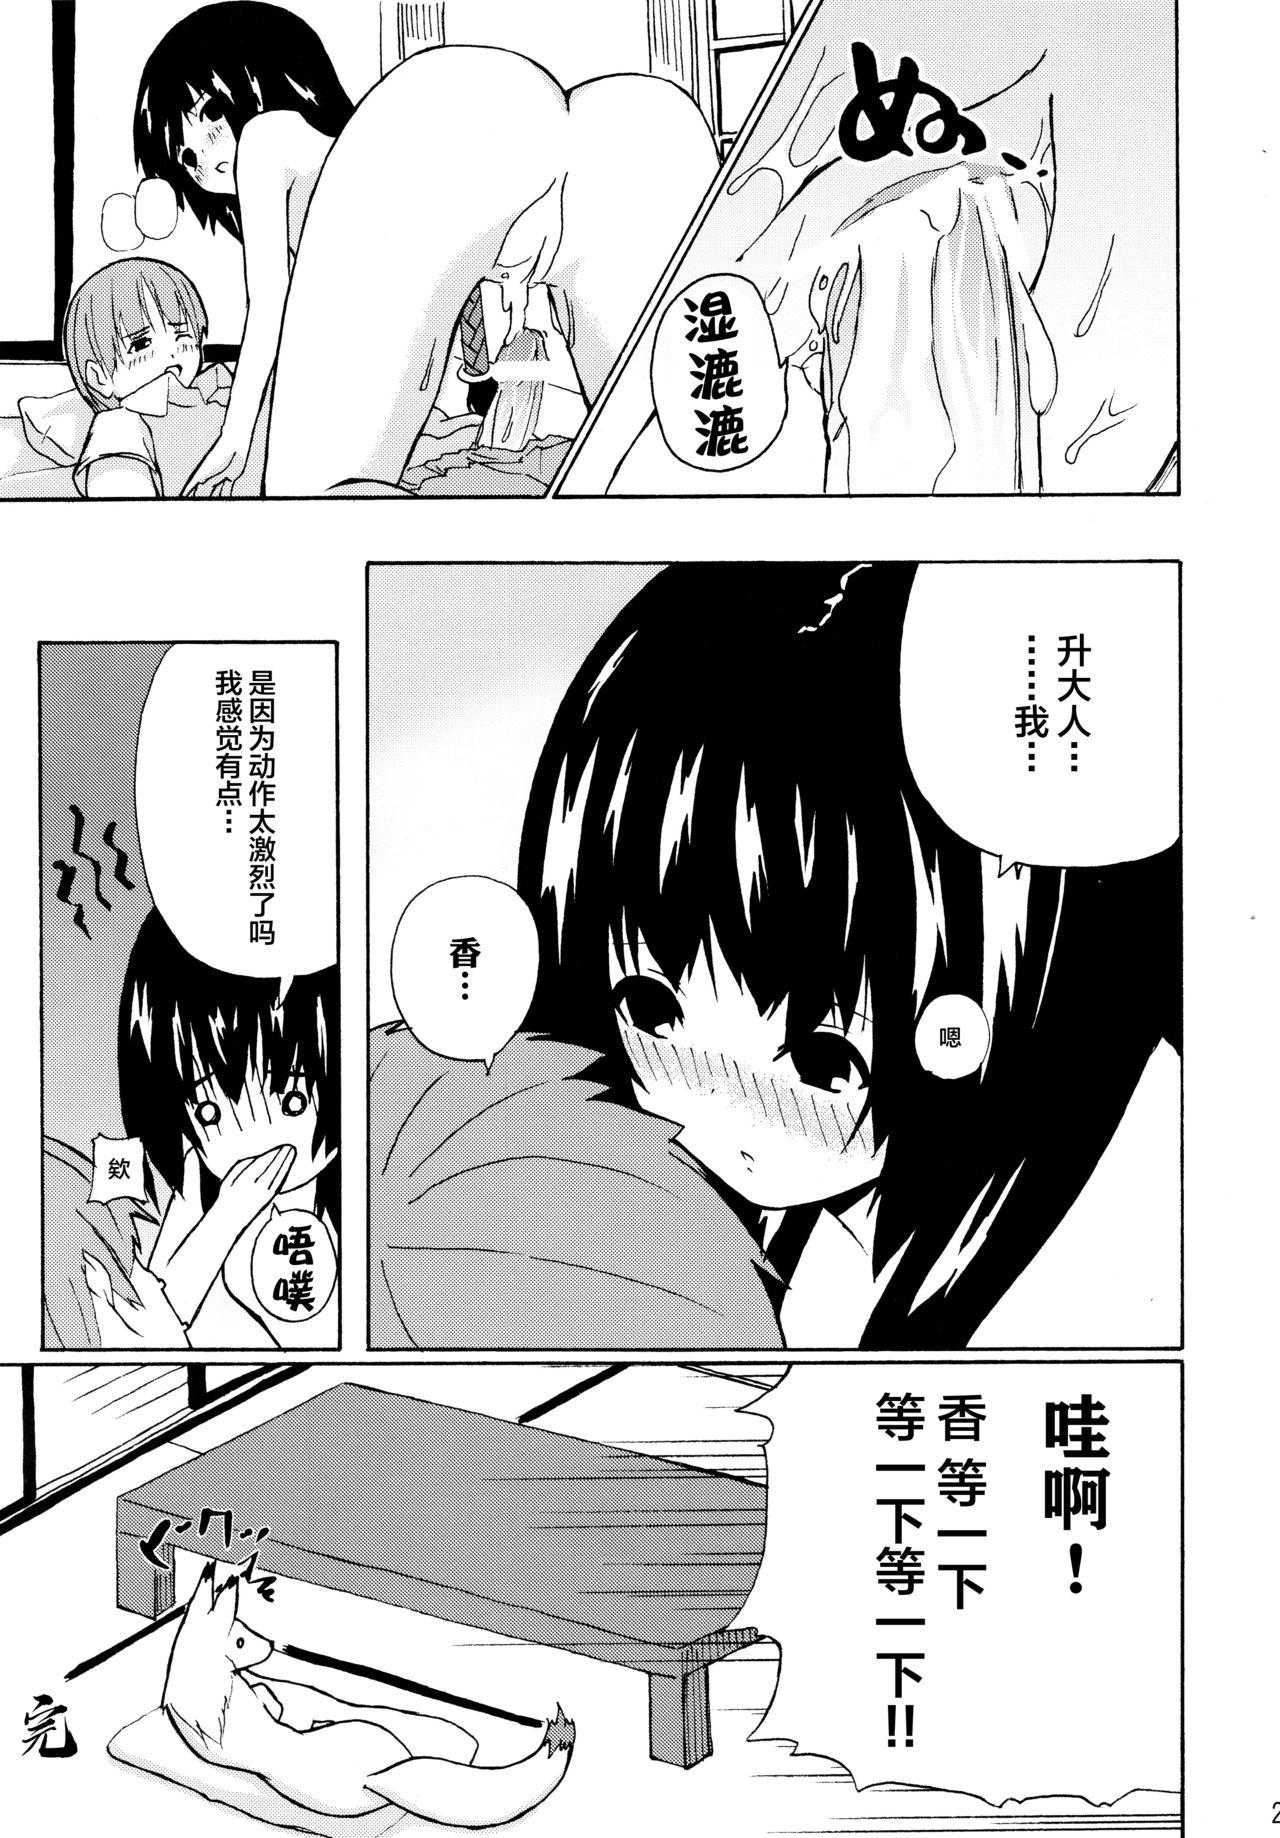 Orgasm Hare, Tokidoki Oinari-sama 2 - Wagaya no oinari-sama Huge - Page 21